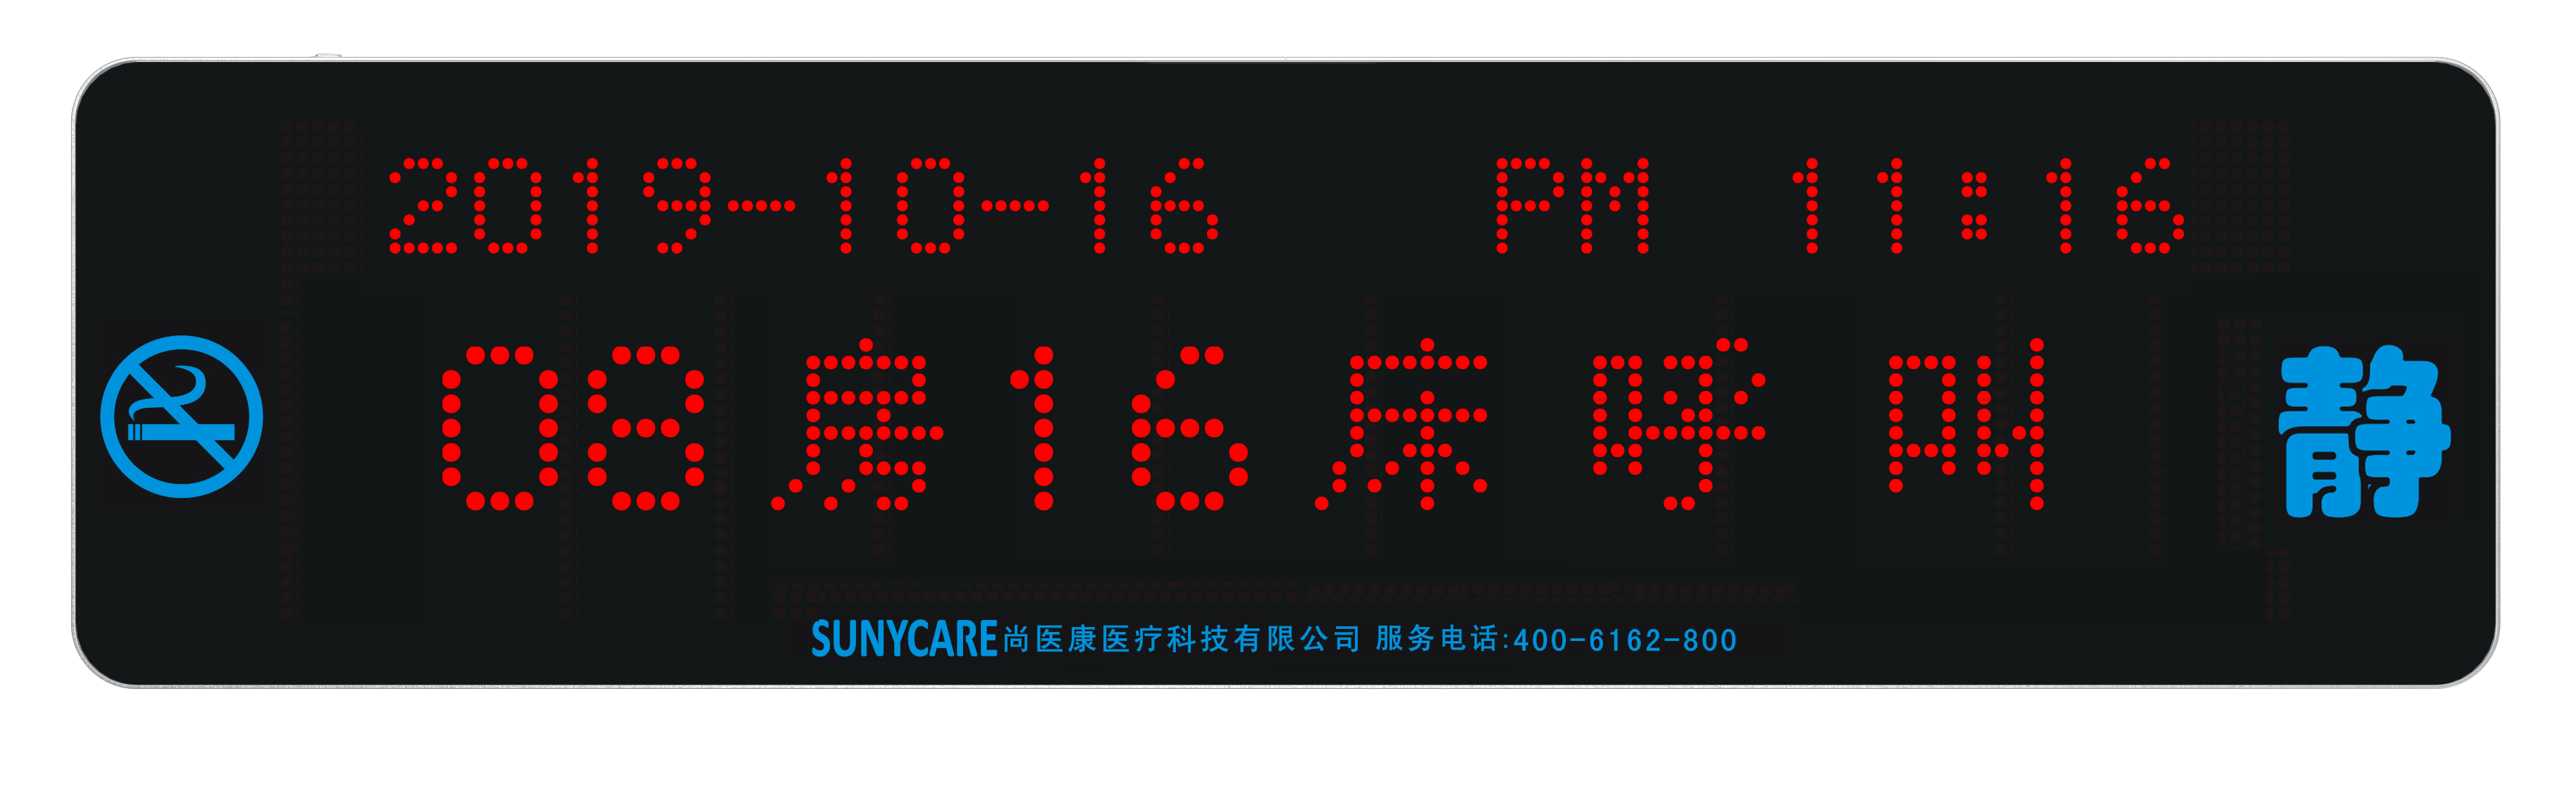 双排-走廊LCD显示屏-02A8尚医康.png